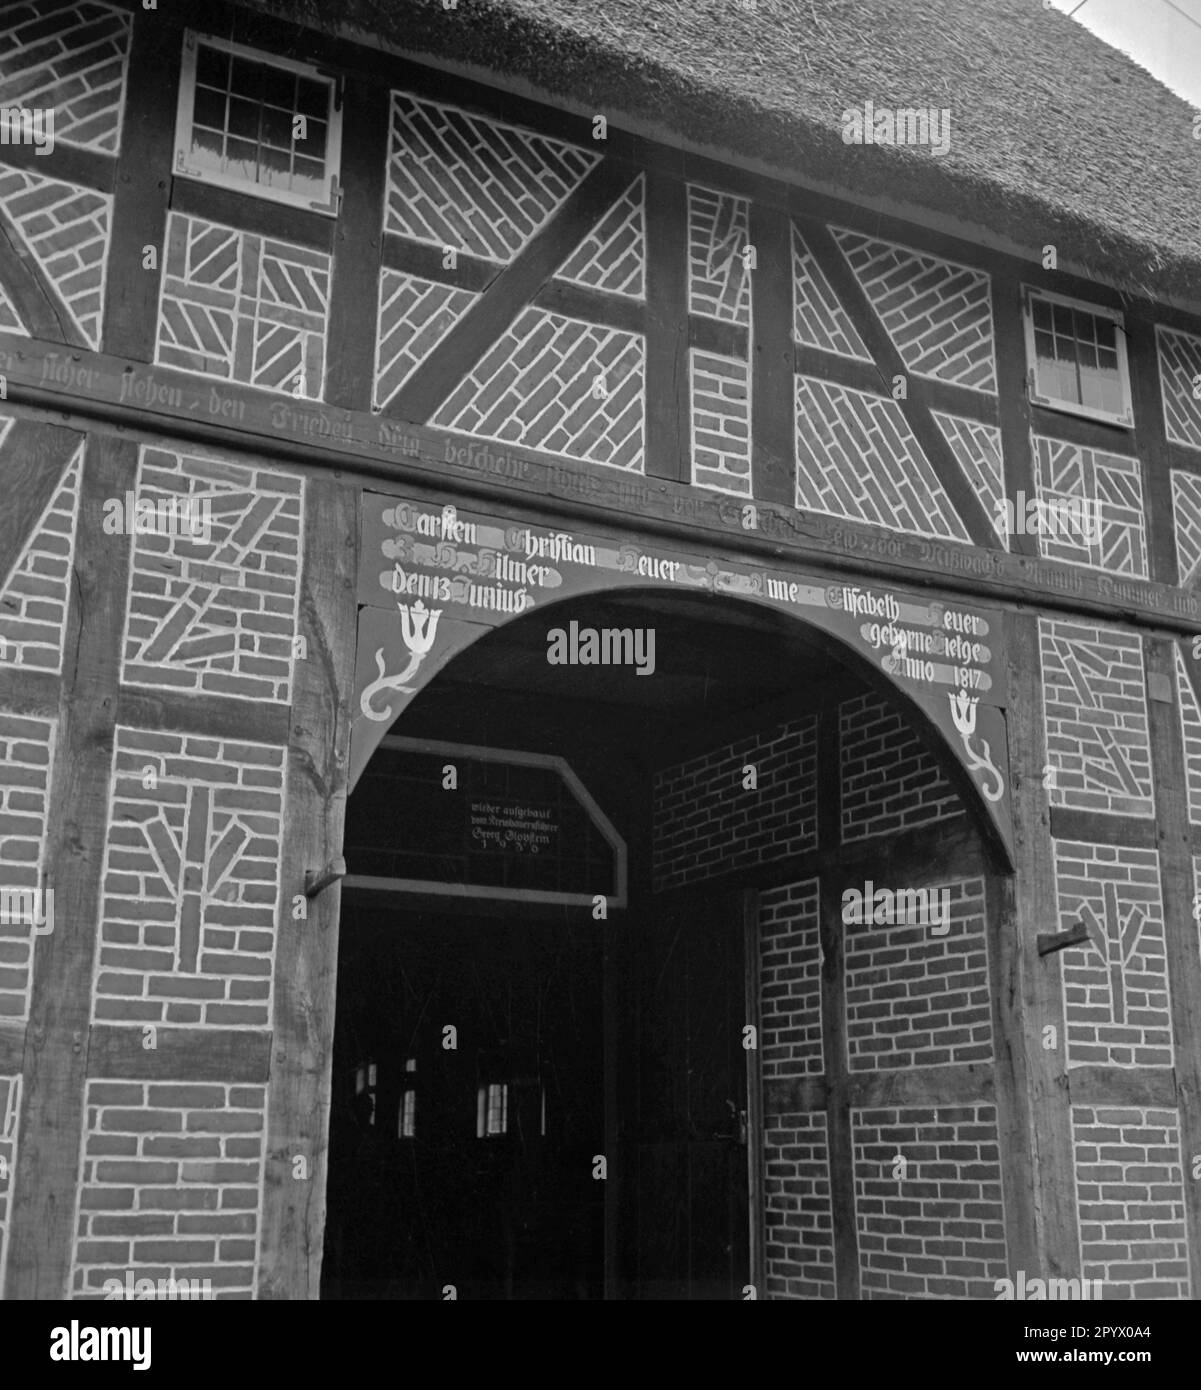 Porte d'entrée d'une maison en demi-bois construite en 1817 près de Neustrelitz. Le cadre est décoré de runes. Au-dessus de la porte au centre, le signal rune. Gauche et droite (de haut en bas) : swastika, Wolfsangel et Lebensrune (SIG rune). Photo non datée. Banque D'Images